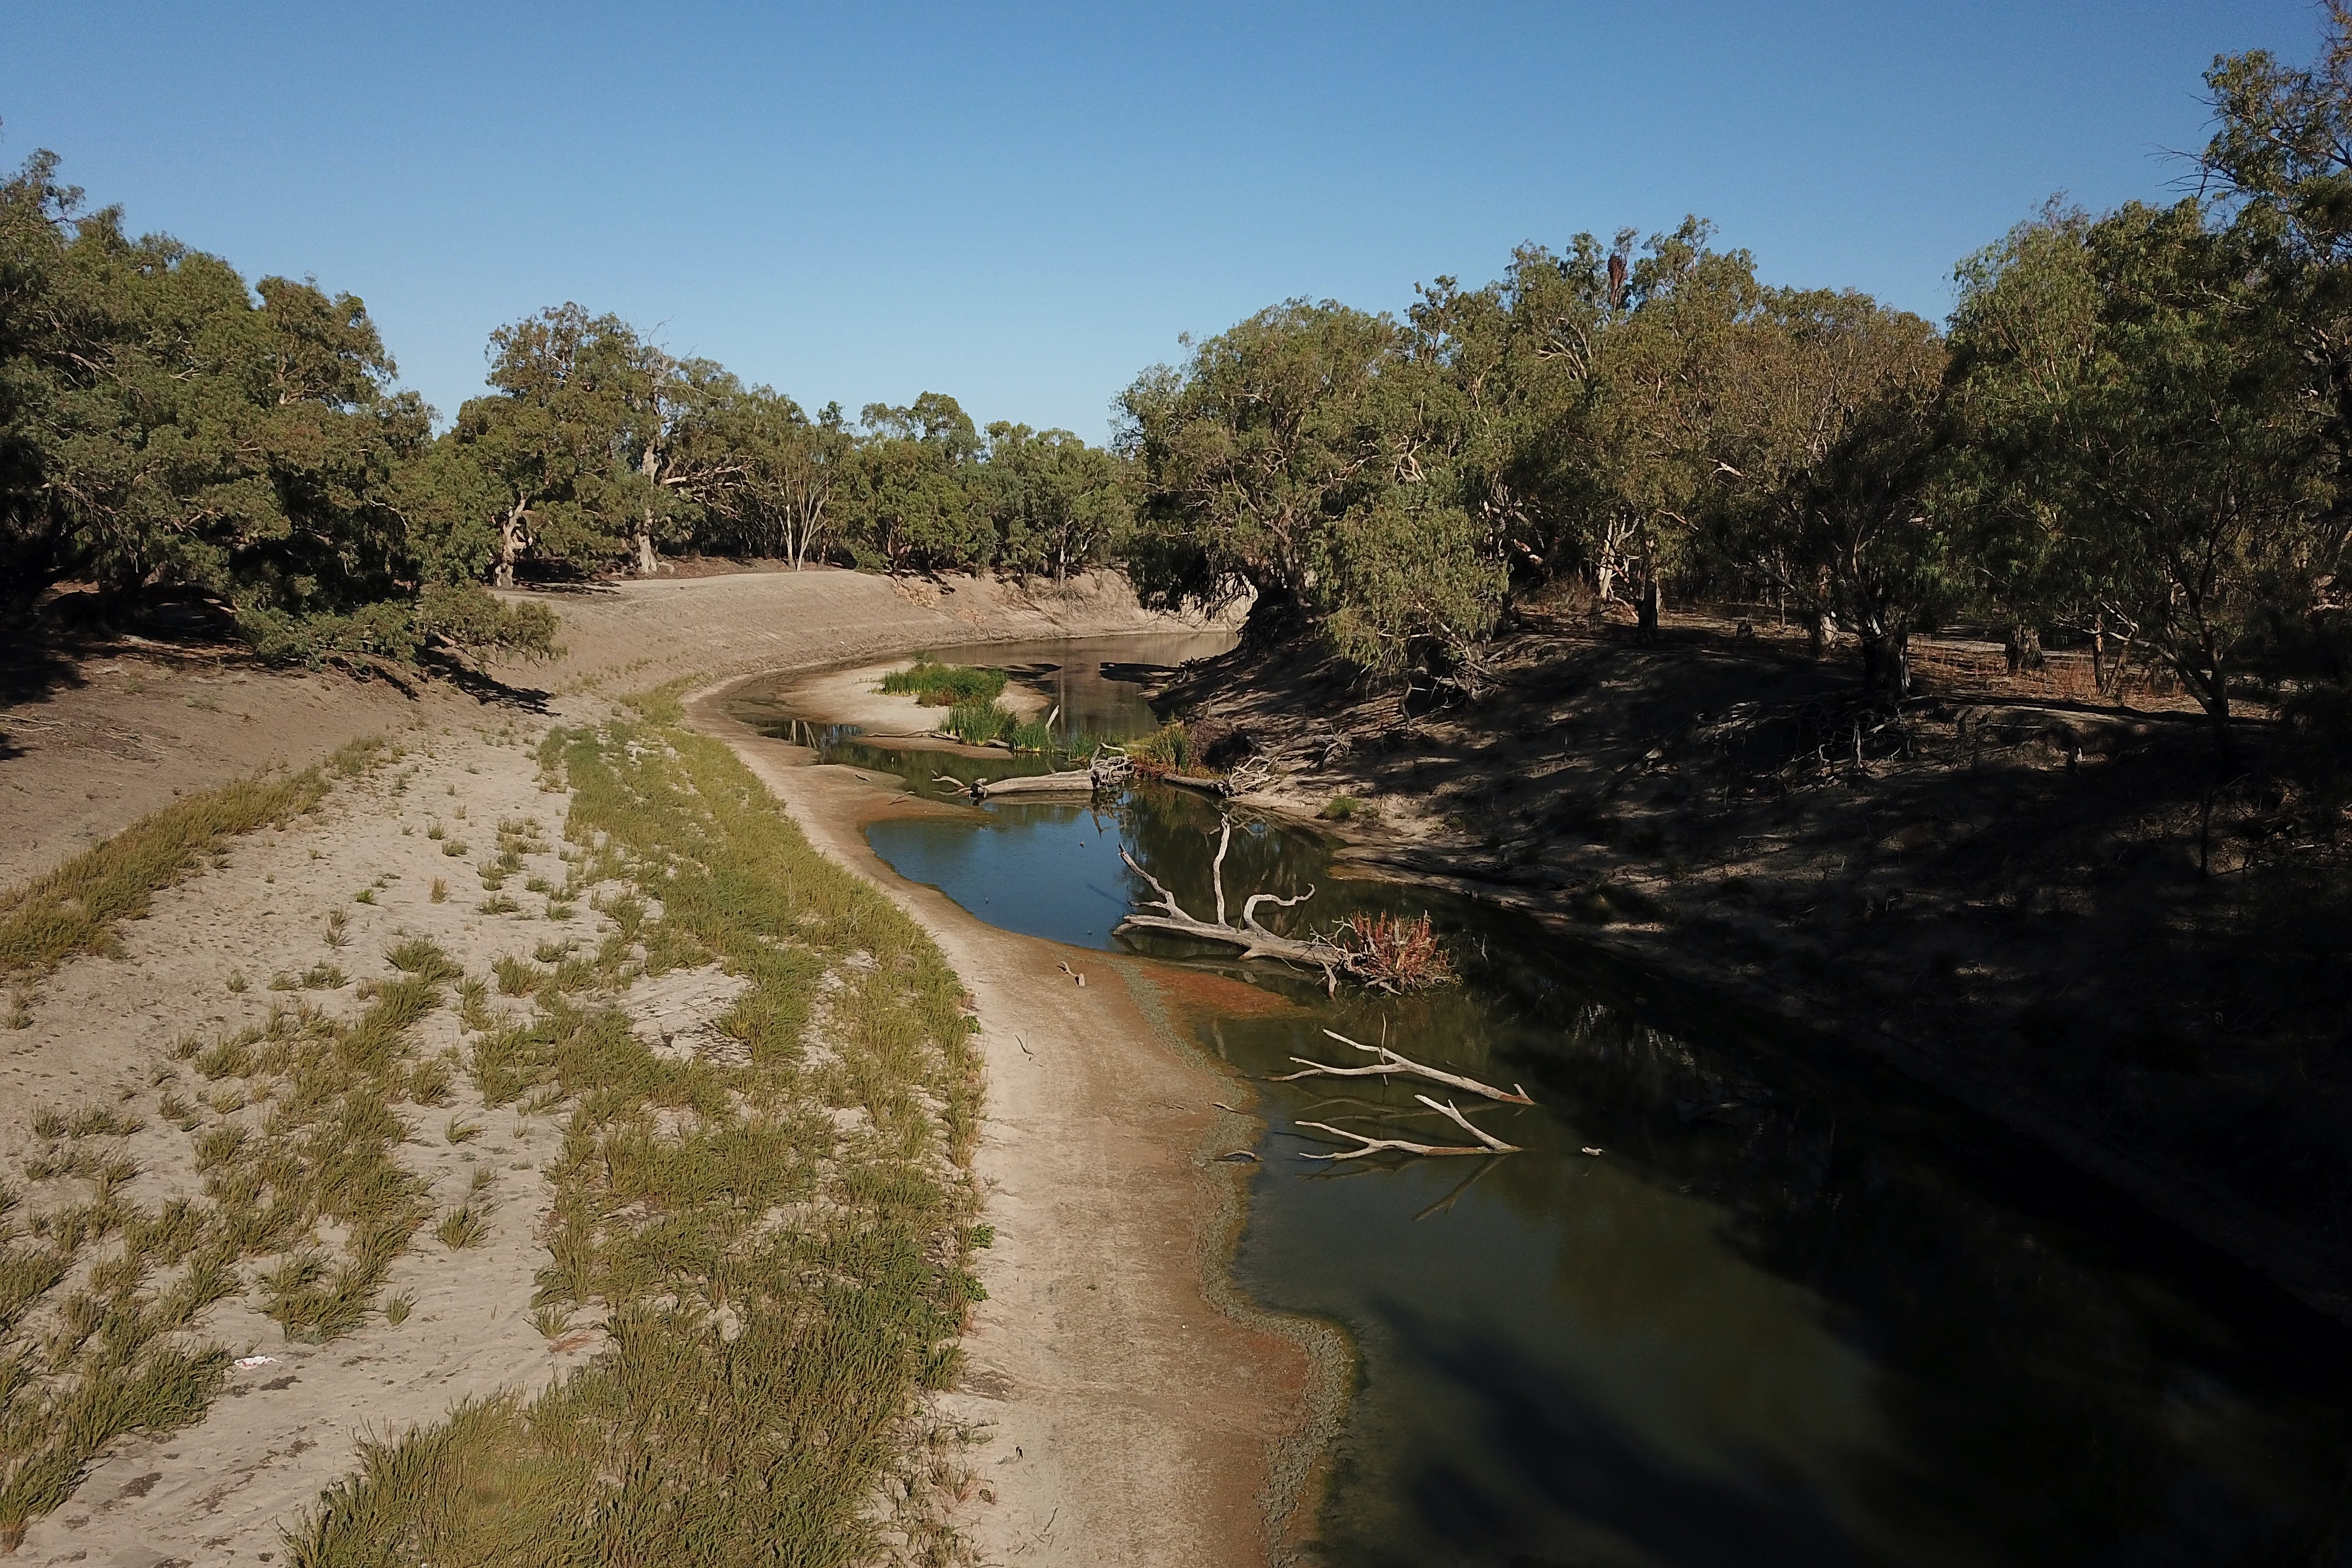 Река дарлинг полноводна. Муррей и Дарлинг. Муррей в Австралии. Река Муррей в Австралии. Река Дарлинг в Австралии.